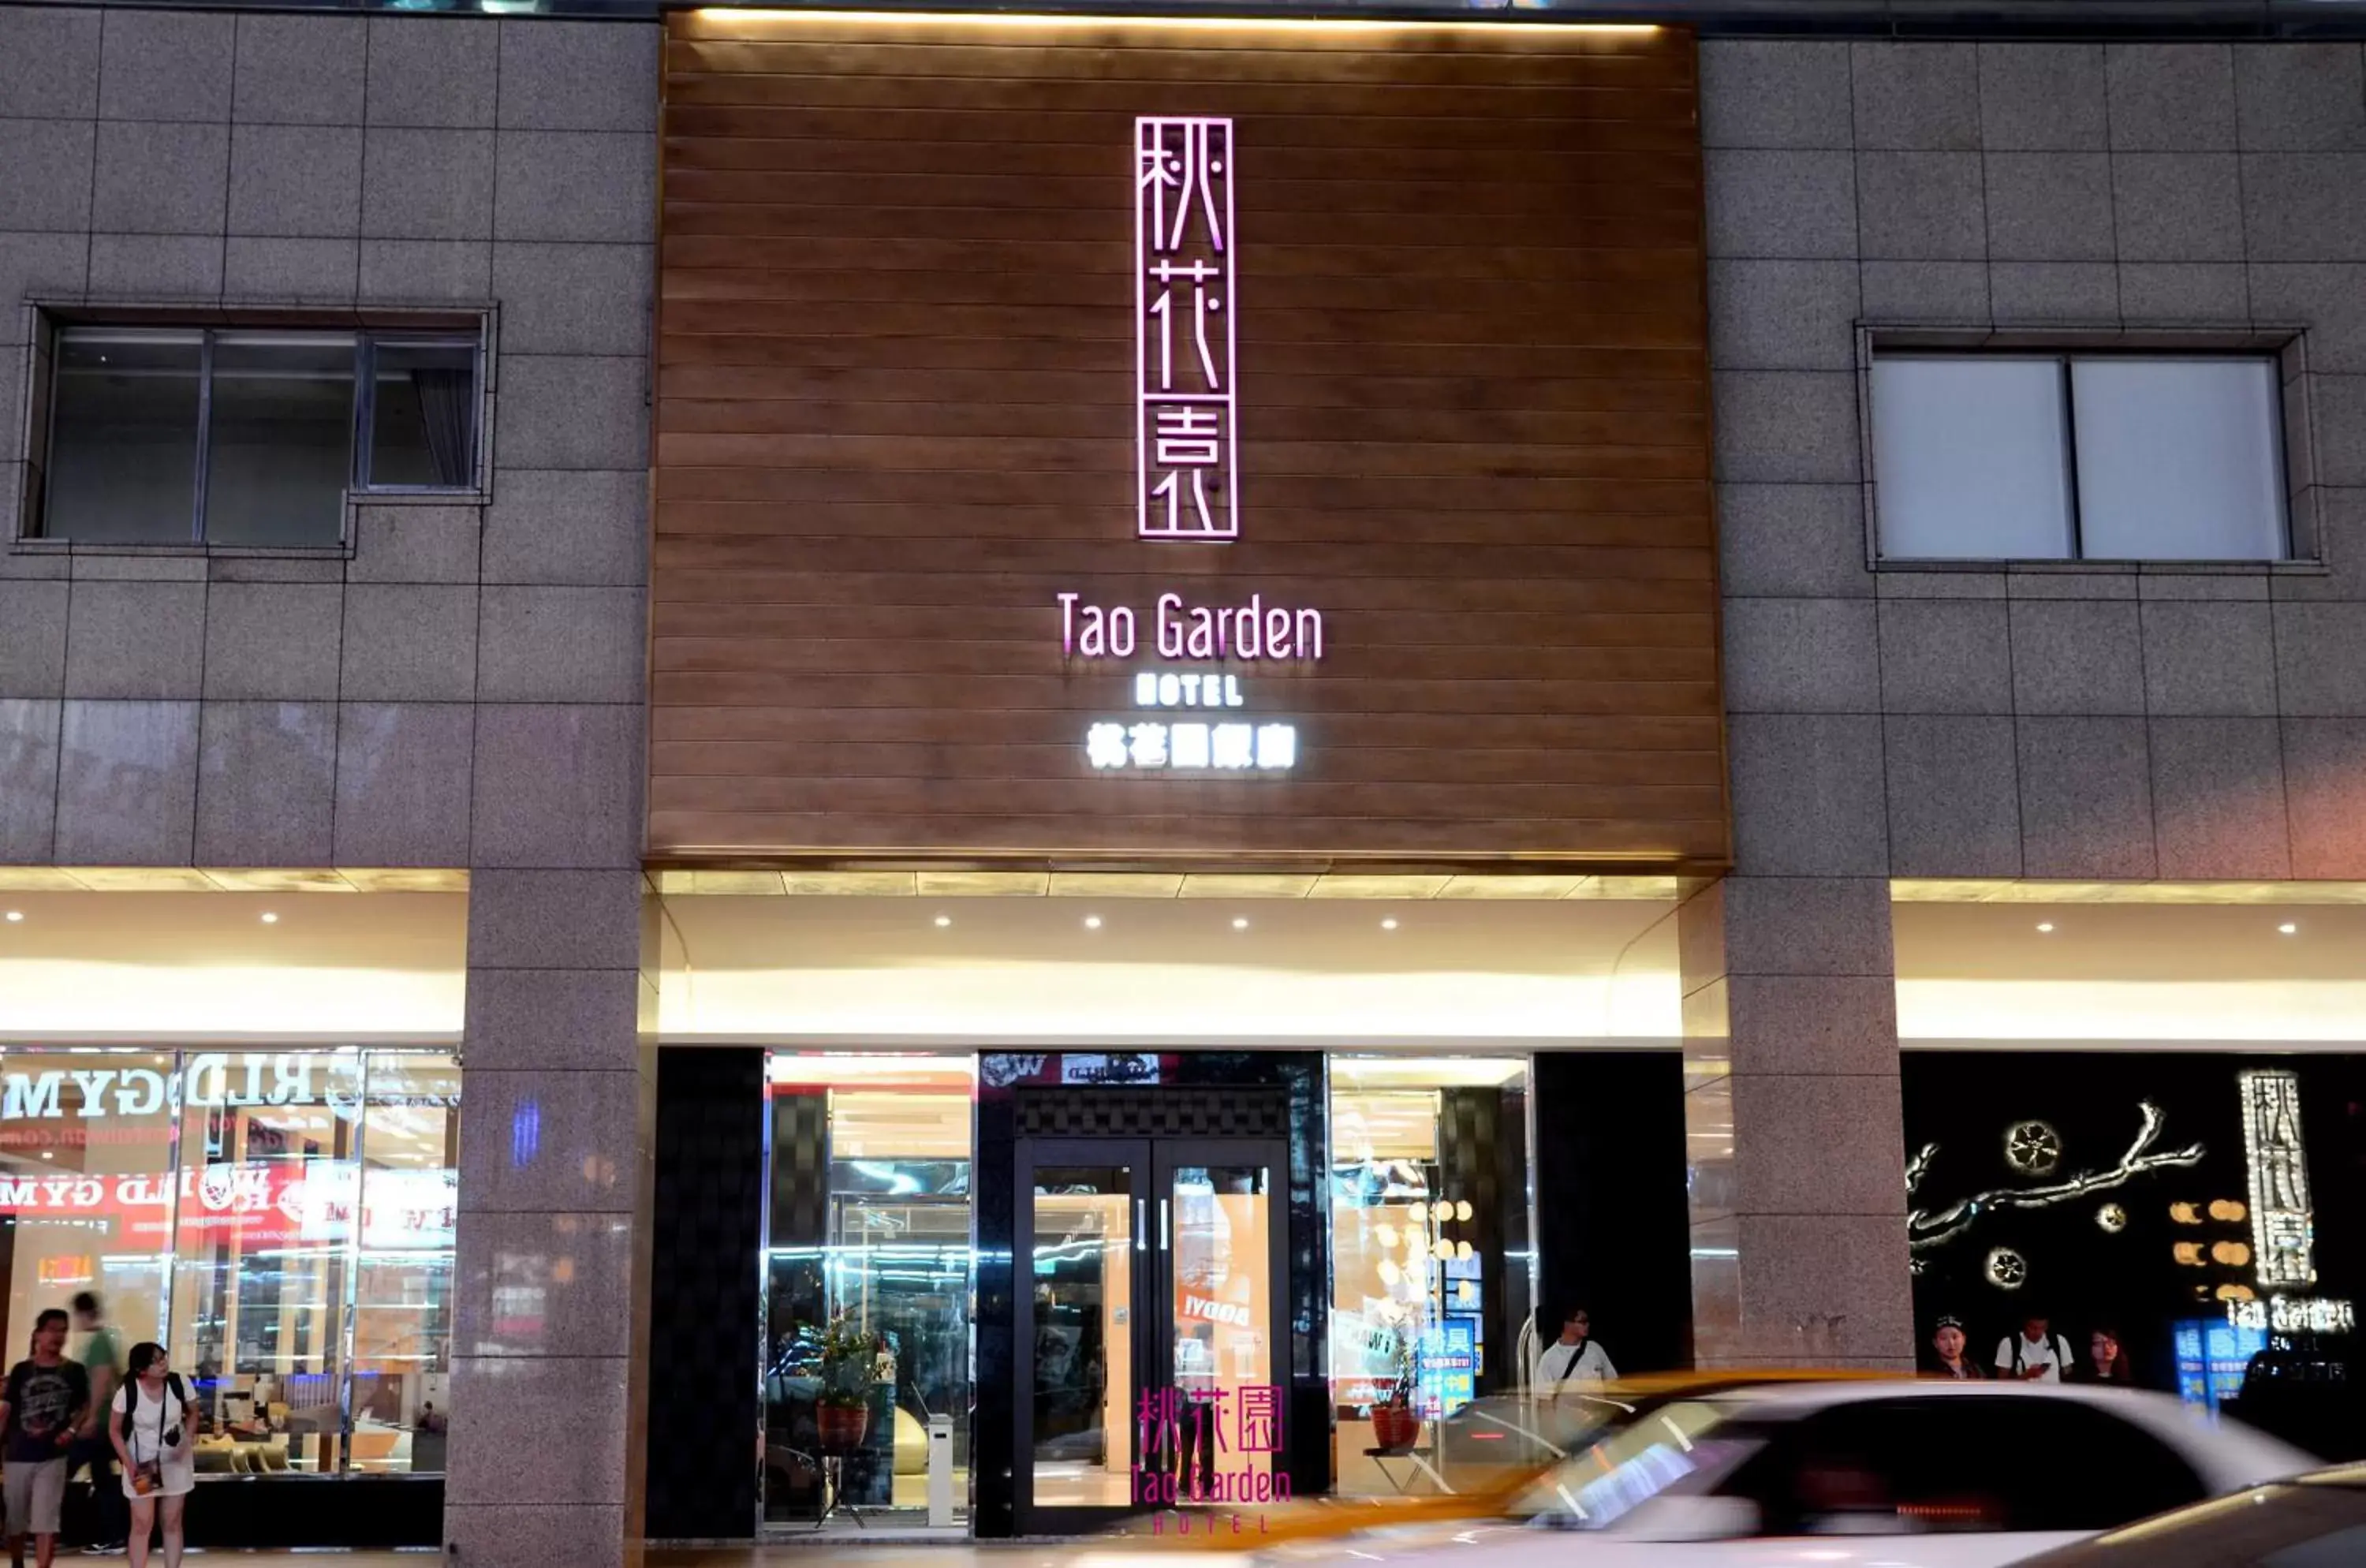 Facade/entrance in Tao Garden Hotel